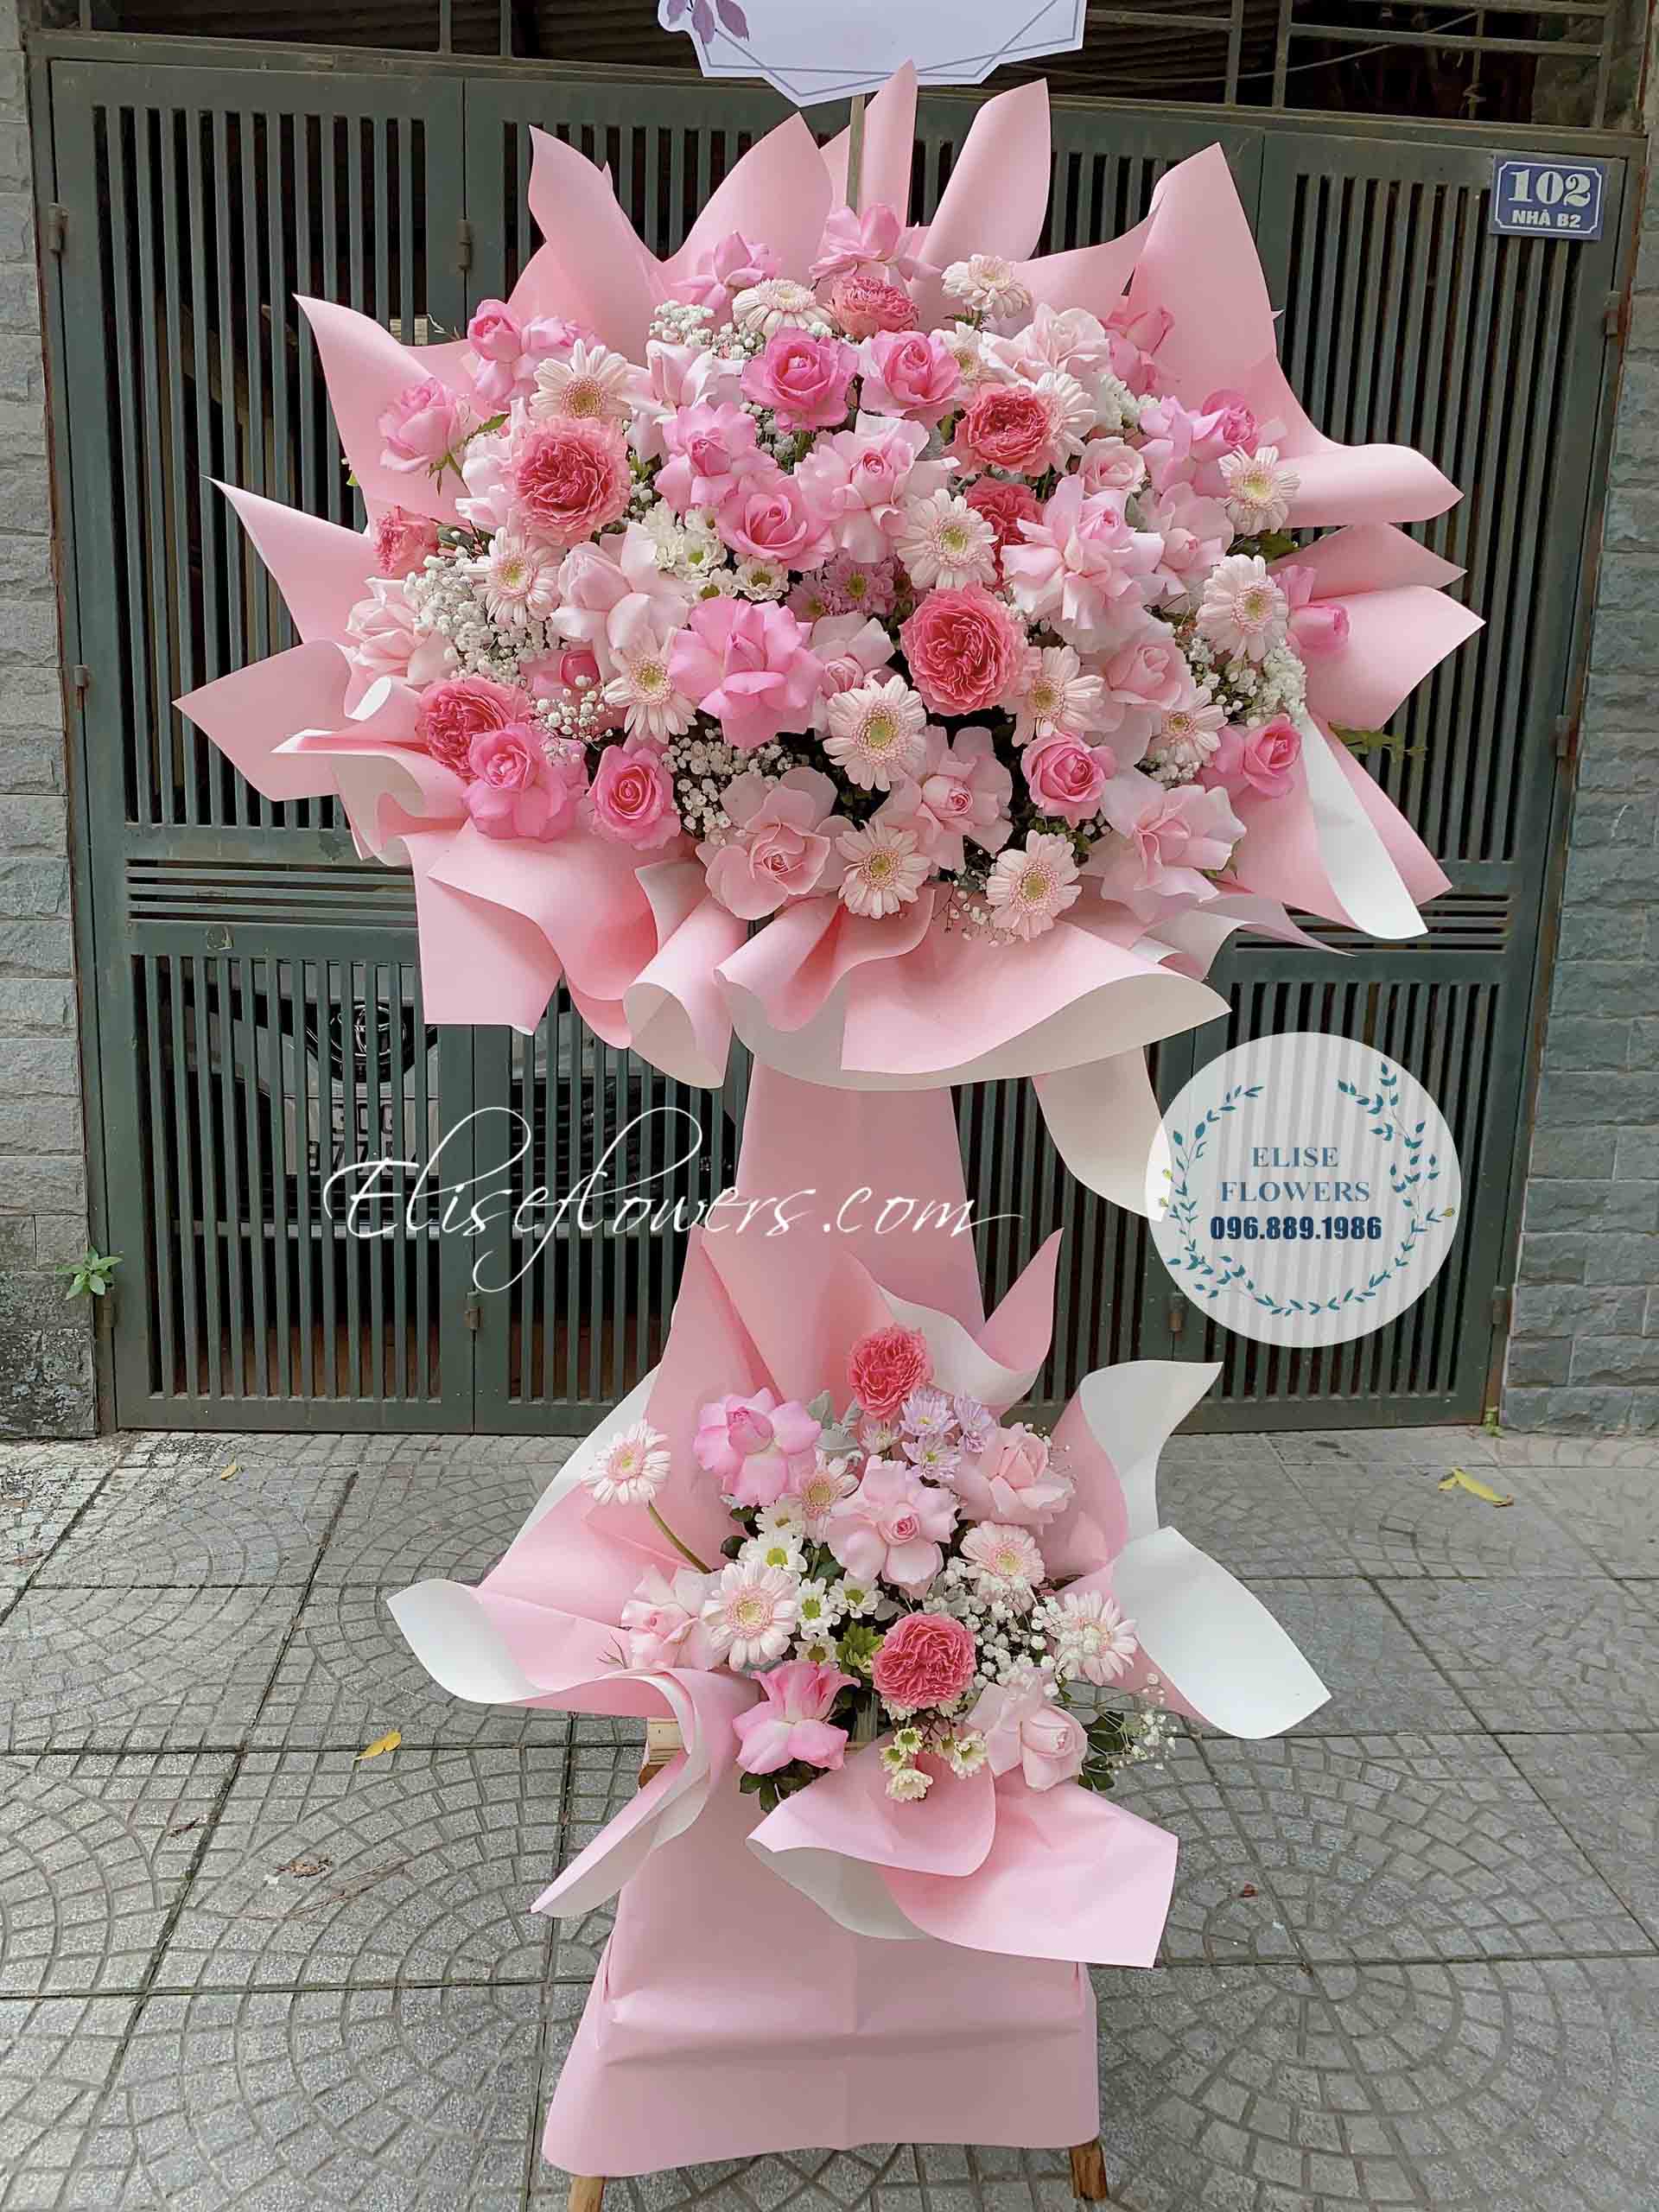 Kệ hoa khai trương màu hồng đẹp ngọt ngào | Điện hoa khai trương ở Hà Nội